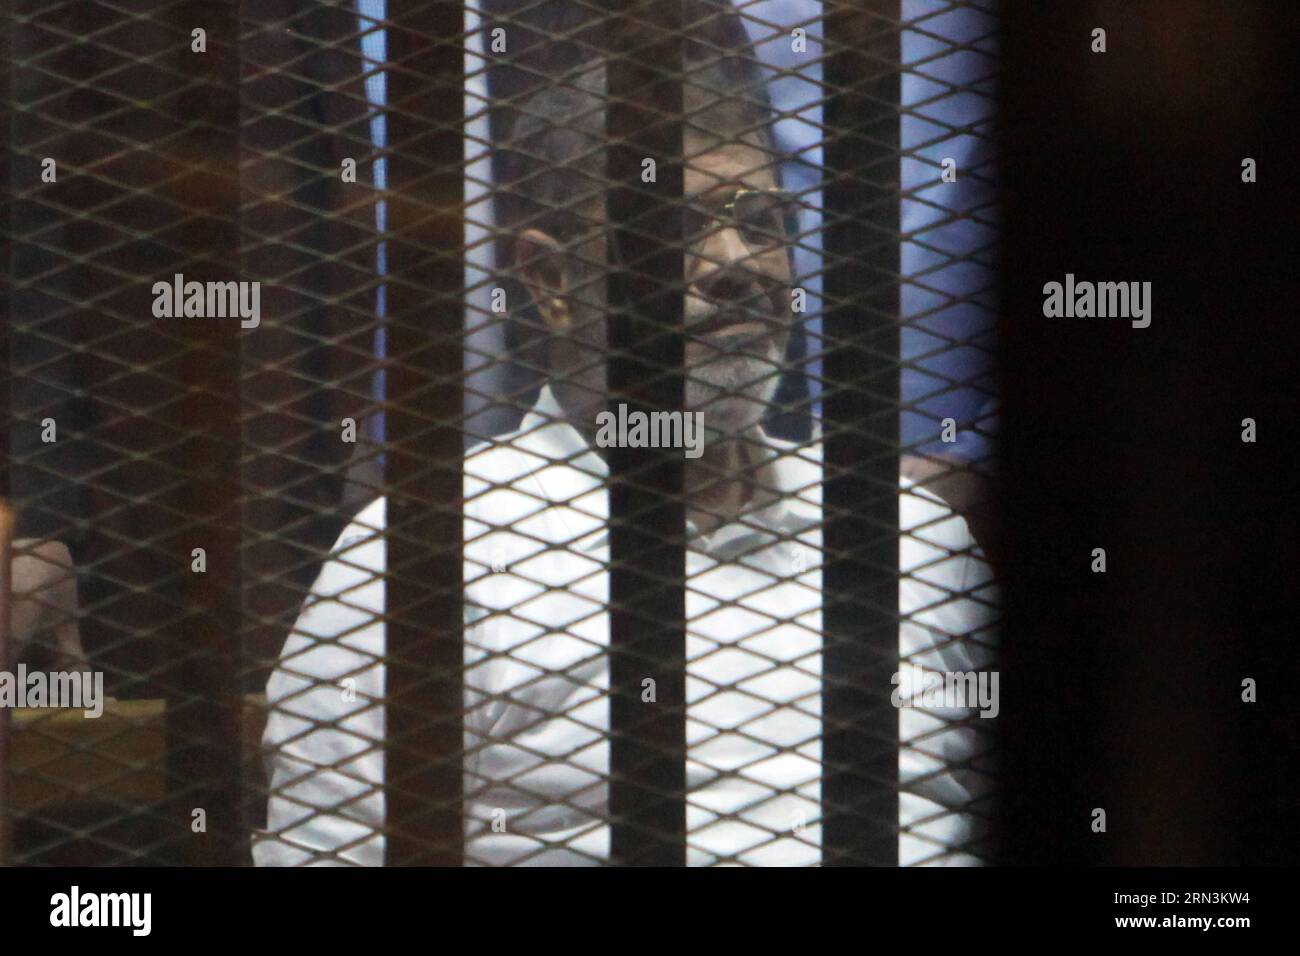 (150421) -- LE CAIRE, 21 avril 2015 -- le président égyptien déchu Mohamed Morsi est assis dans la cage des accusés devant un tribunal du Caire, en Égypte, le 21 avril 2015. Un tribunal égyptien a condamné mardi l'ancien président islamiste Mohammed Morsi à 20 ans de prison pour le meurtre de manifestants en 2012. EGYPTE-CAIRO-POLITICS-TRIAL-MORSI AhmedxGomaa PUBLICATIONxNOTxINxCHN le Caire avril 21 2015 Egypte S Président déchu Mohamed Morsi siège À l'intérieur de la cage des accusés DANS un tribunal du Caire Egypte LE 21 2015 avril à la Cour égyptienne a condamné mardi l'ancien président islamiste Mohammed Morsi à 20 ans de prison Banque D'Images